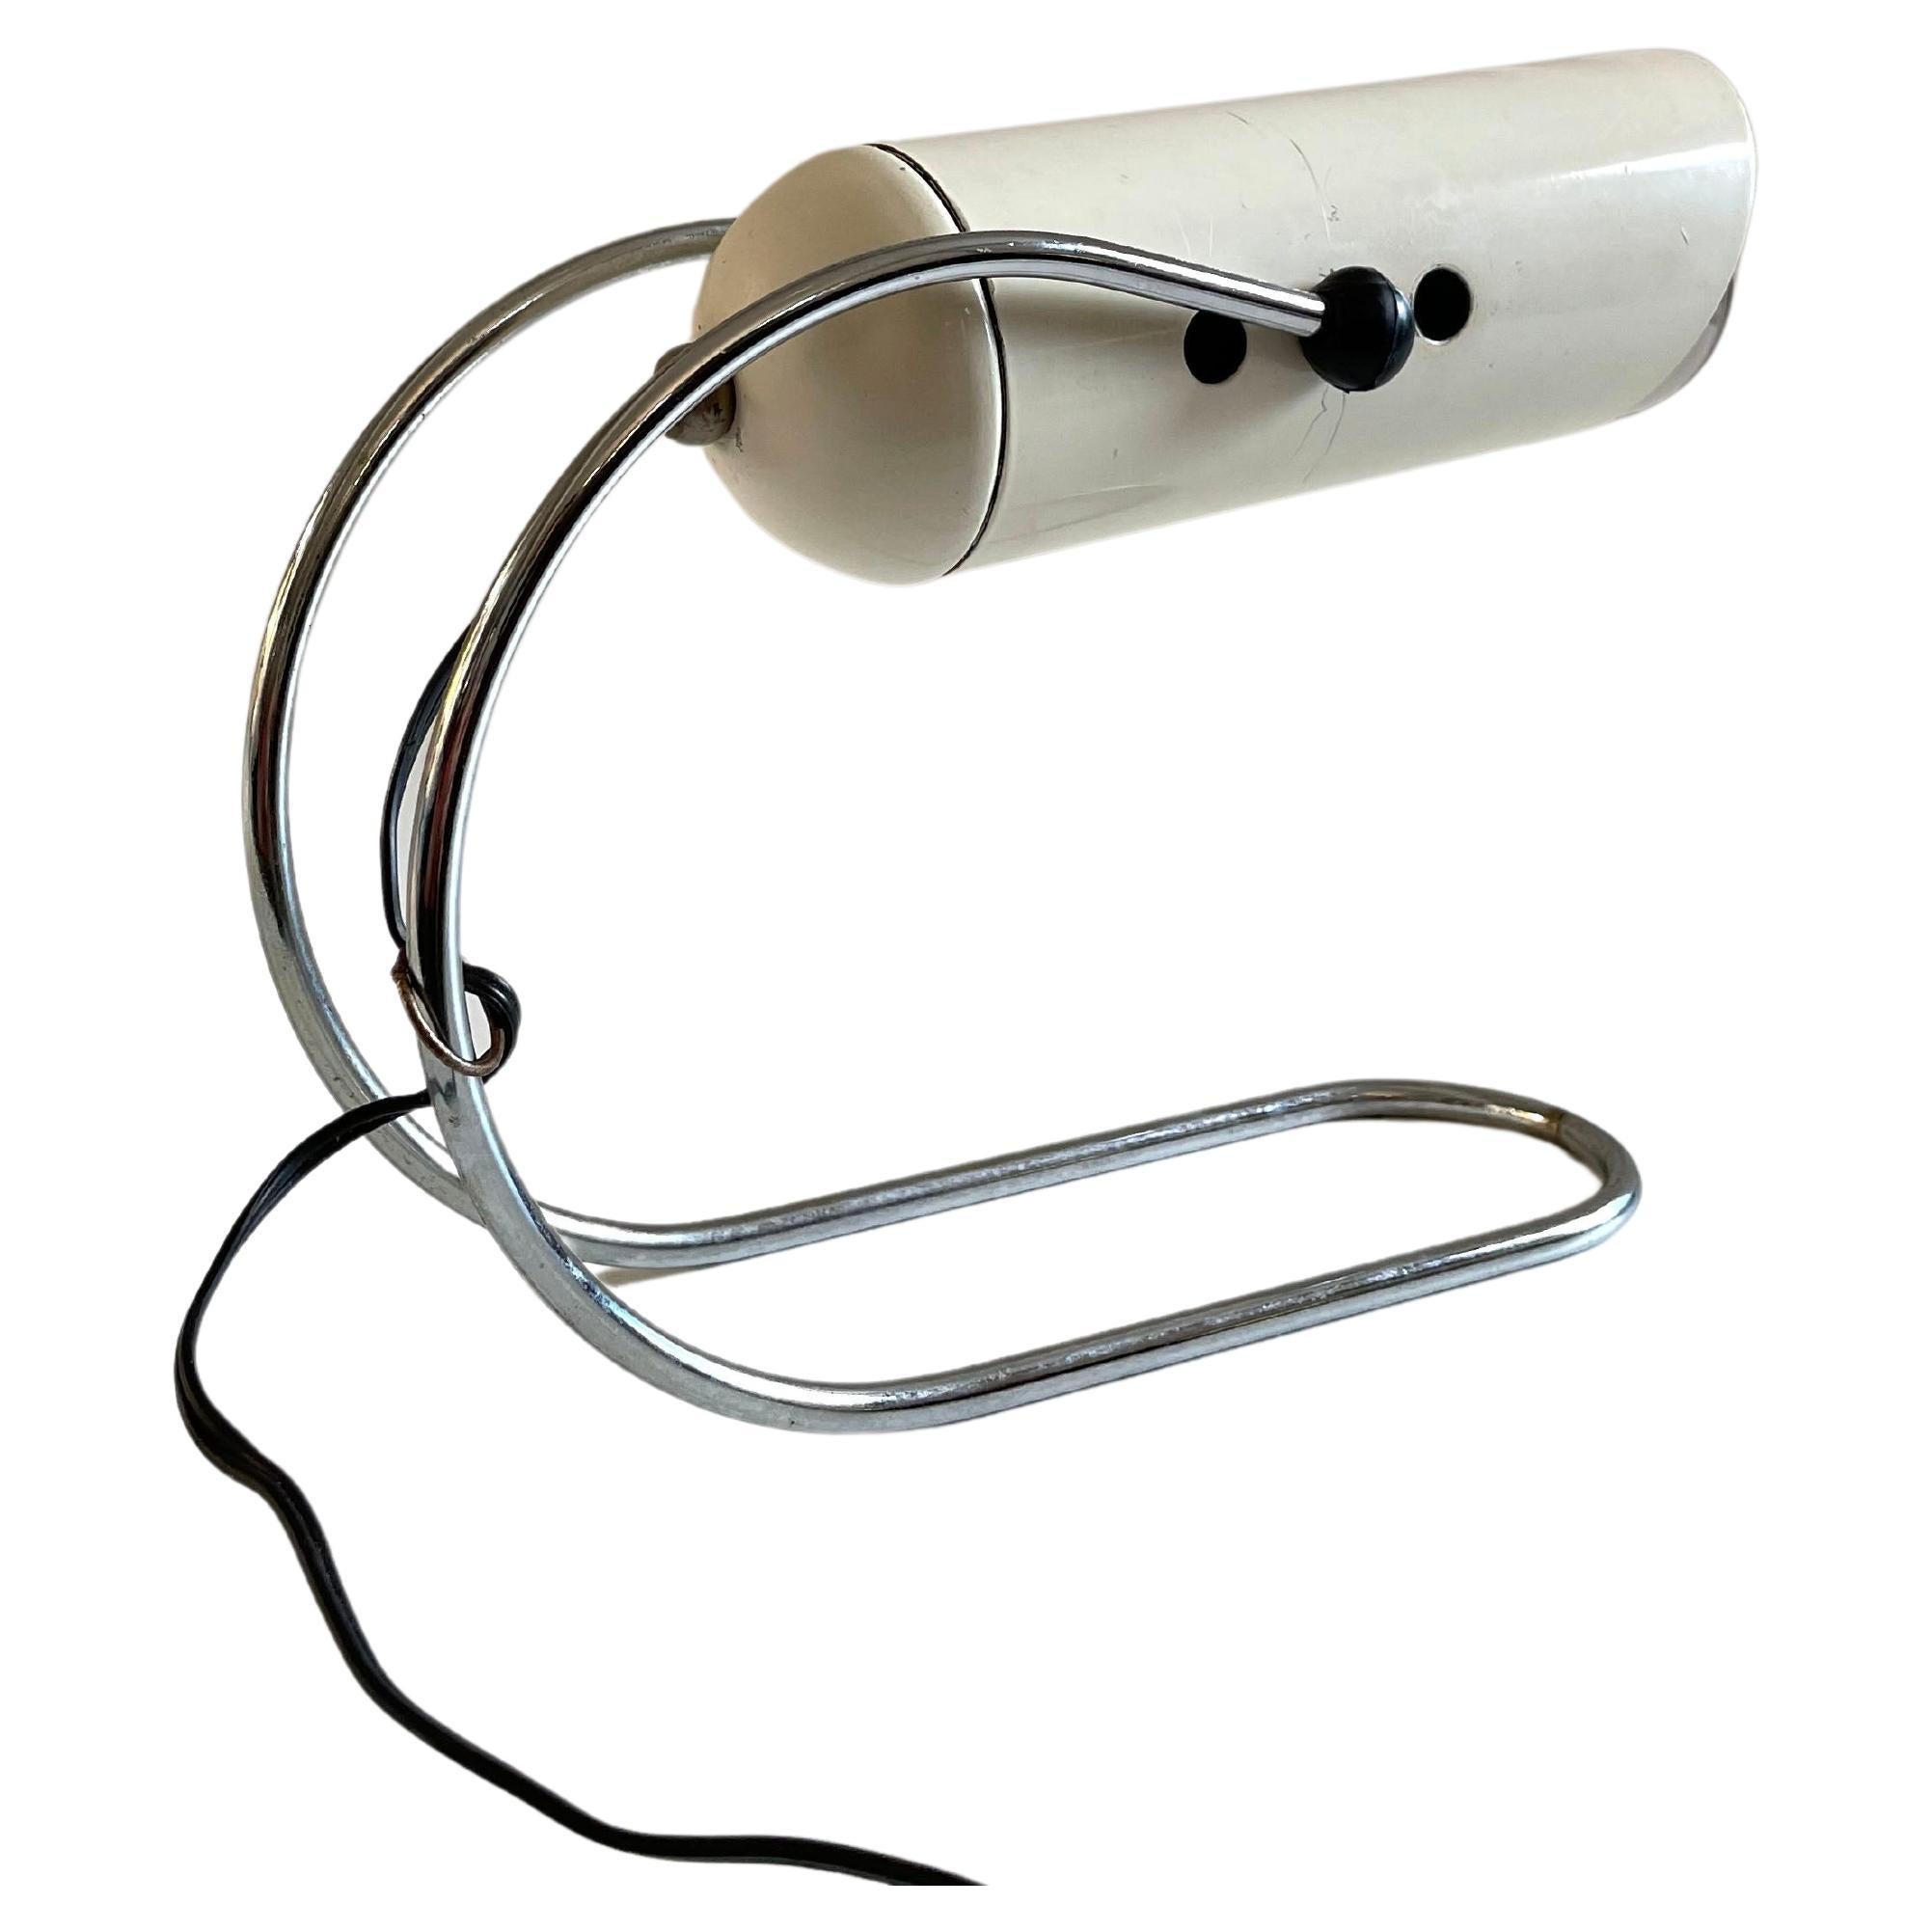 Lampe de table italienne du milieu du siècle conçue par Angelo Lelli en métal laqué blanc et base chromée, Italie, années 1950.

L'abat-jour est réglable, la lampe est câblée avec le câblage vintage d'origine et en parfait état de